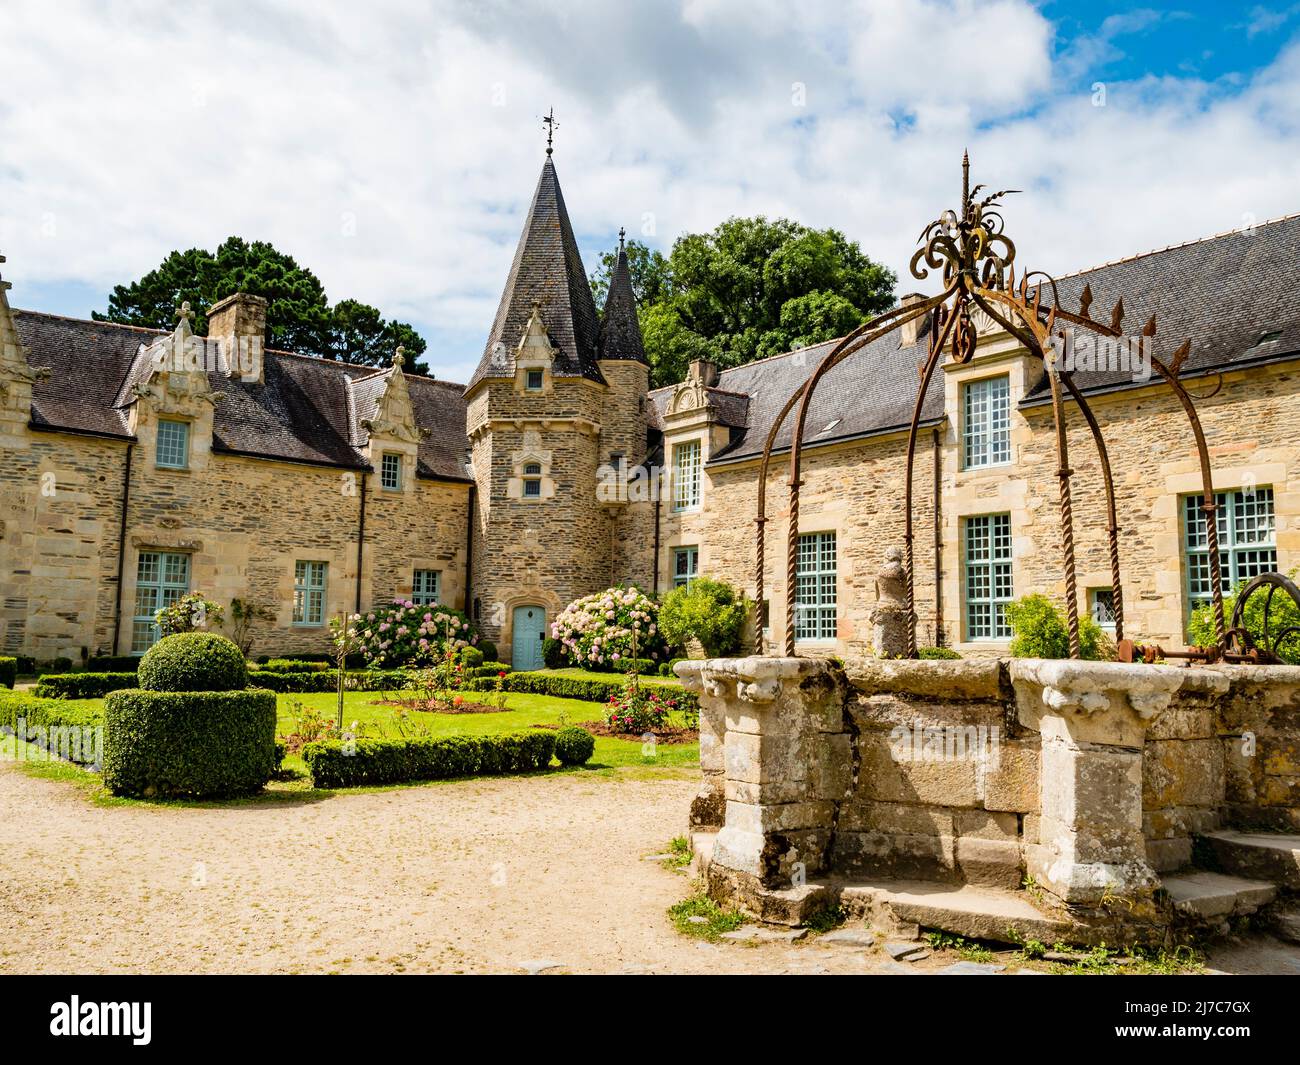 Vue imprenable sur le château médiéval de Rochefort-en-Terre, village pittoresque du département du Morbihan, Bretagne, France Banque D'Images